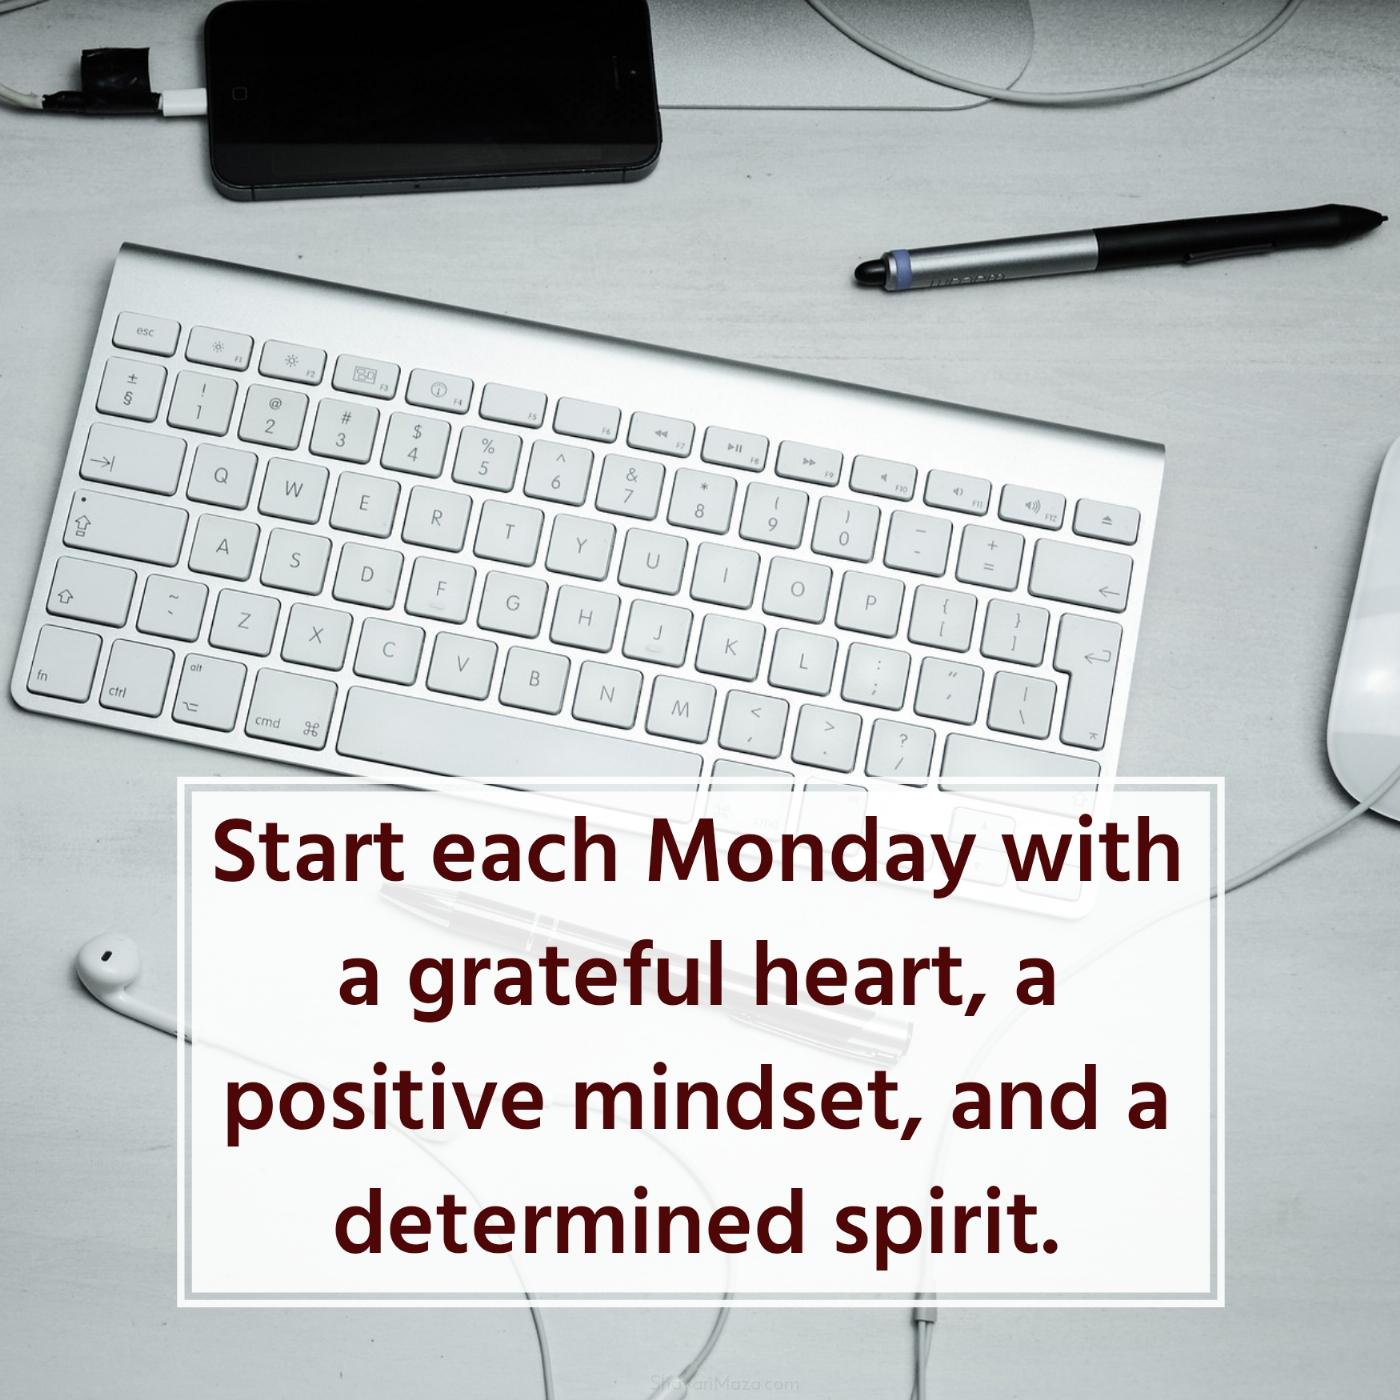 Start each Monday with a grateful heart a positive mindset